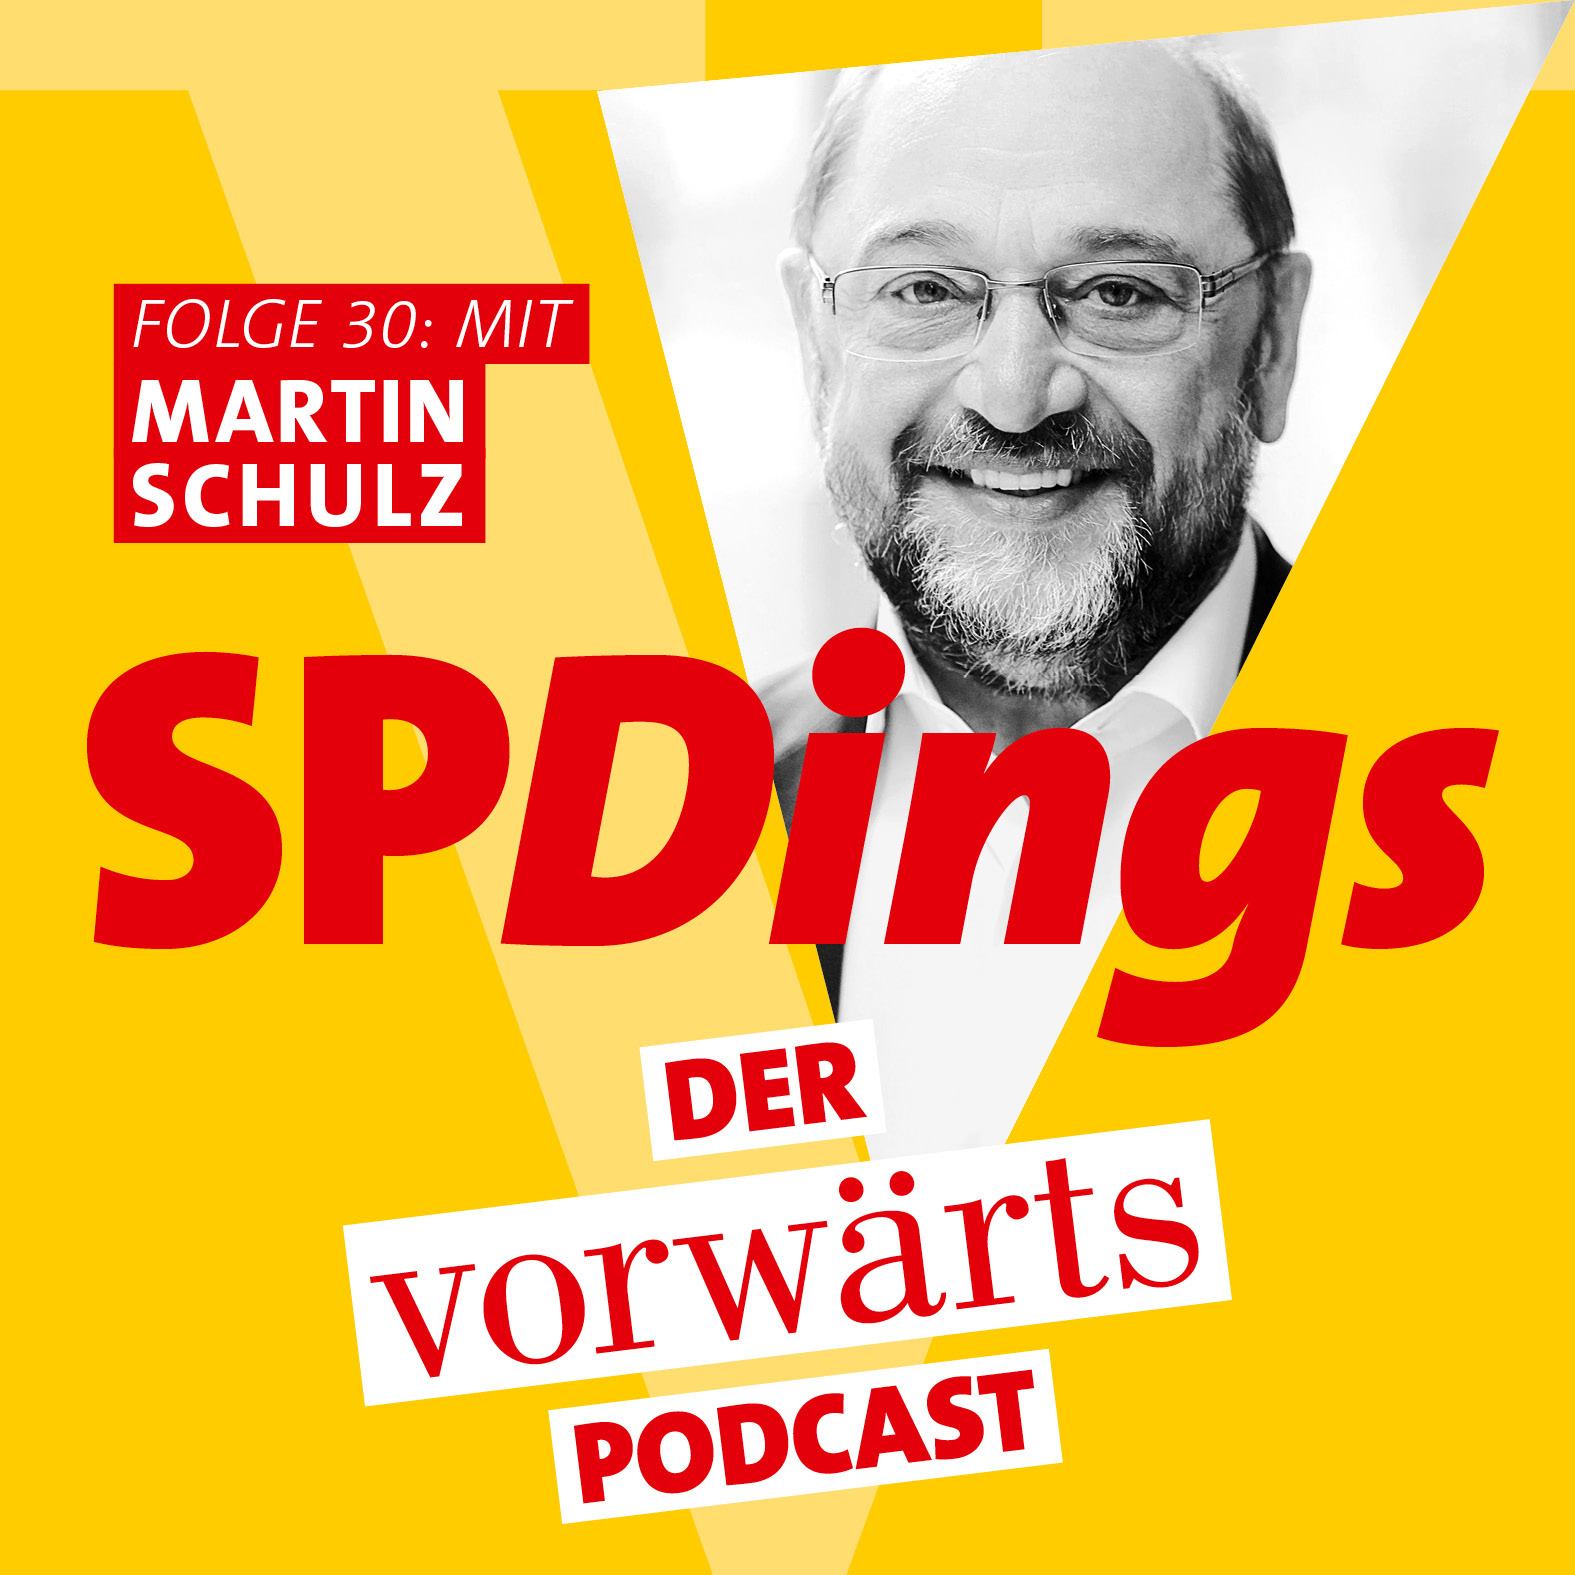 Martin Schulz ist Vorsitzender der Friedrich-Ebert-Stiftung.